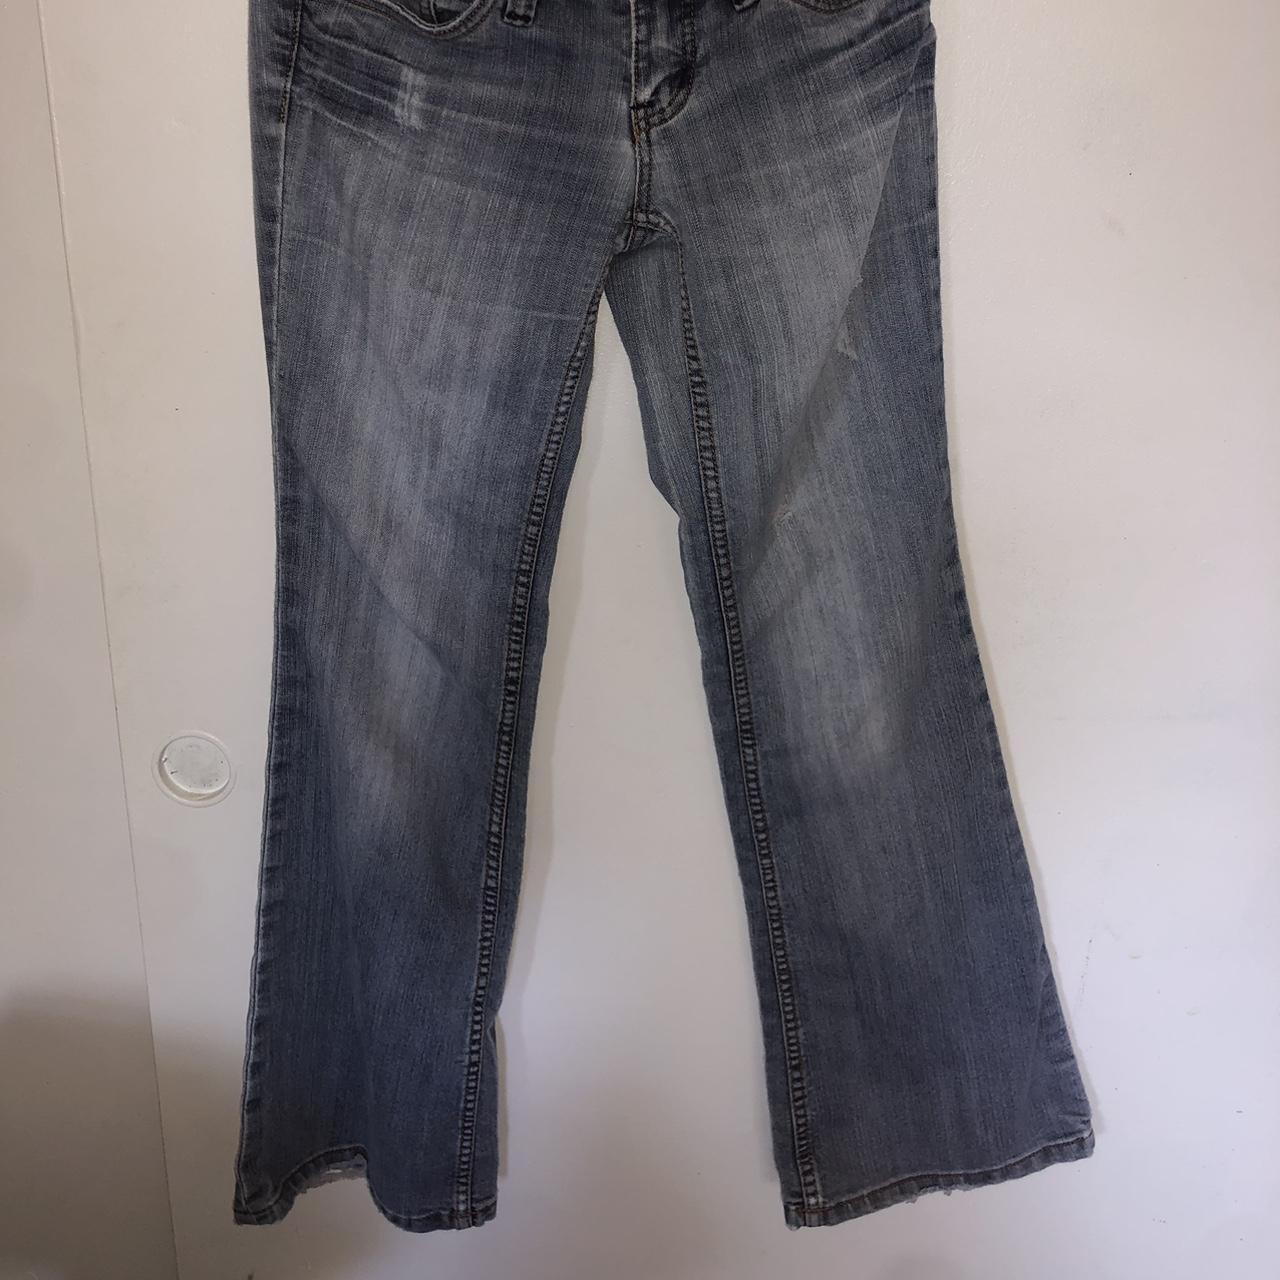 low rise light wash jeans 37 in long, waist 24... - Depop